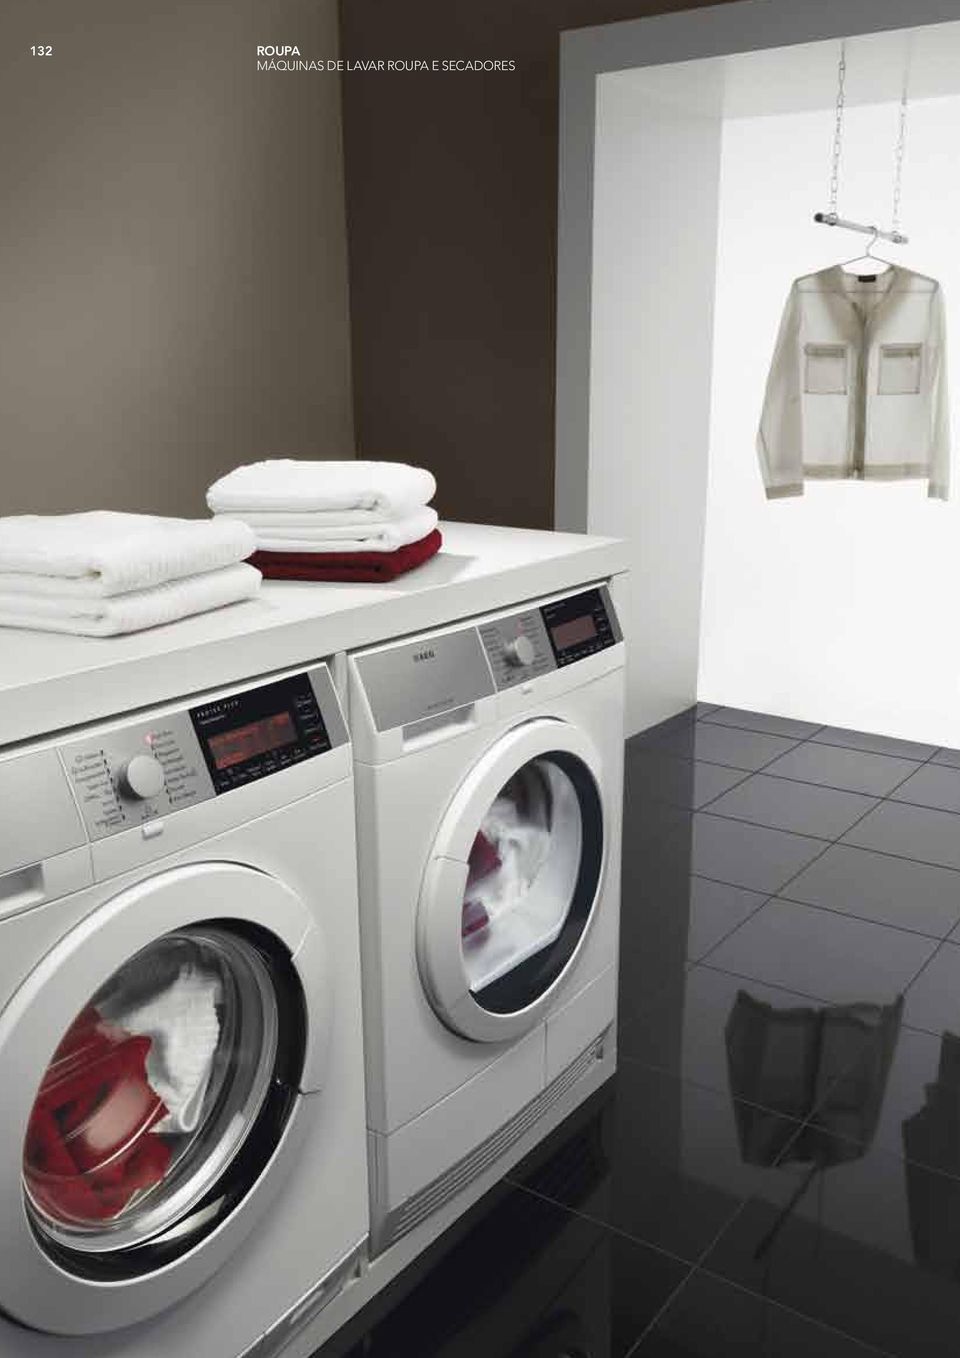 132 roupa máquinas de lavar roupa e secadores - PDF Download grátis